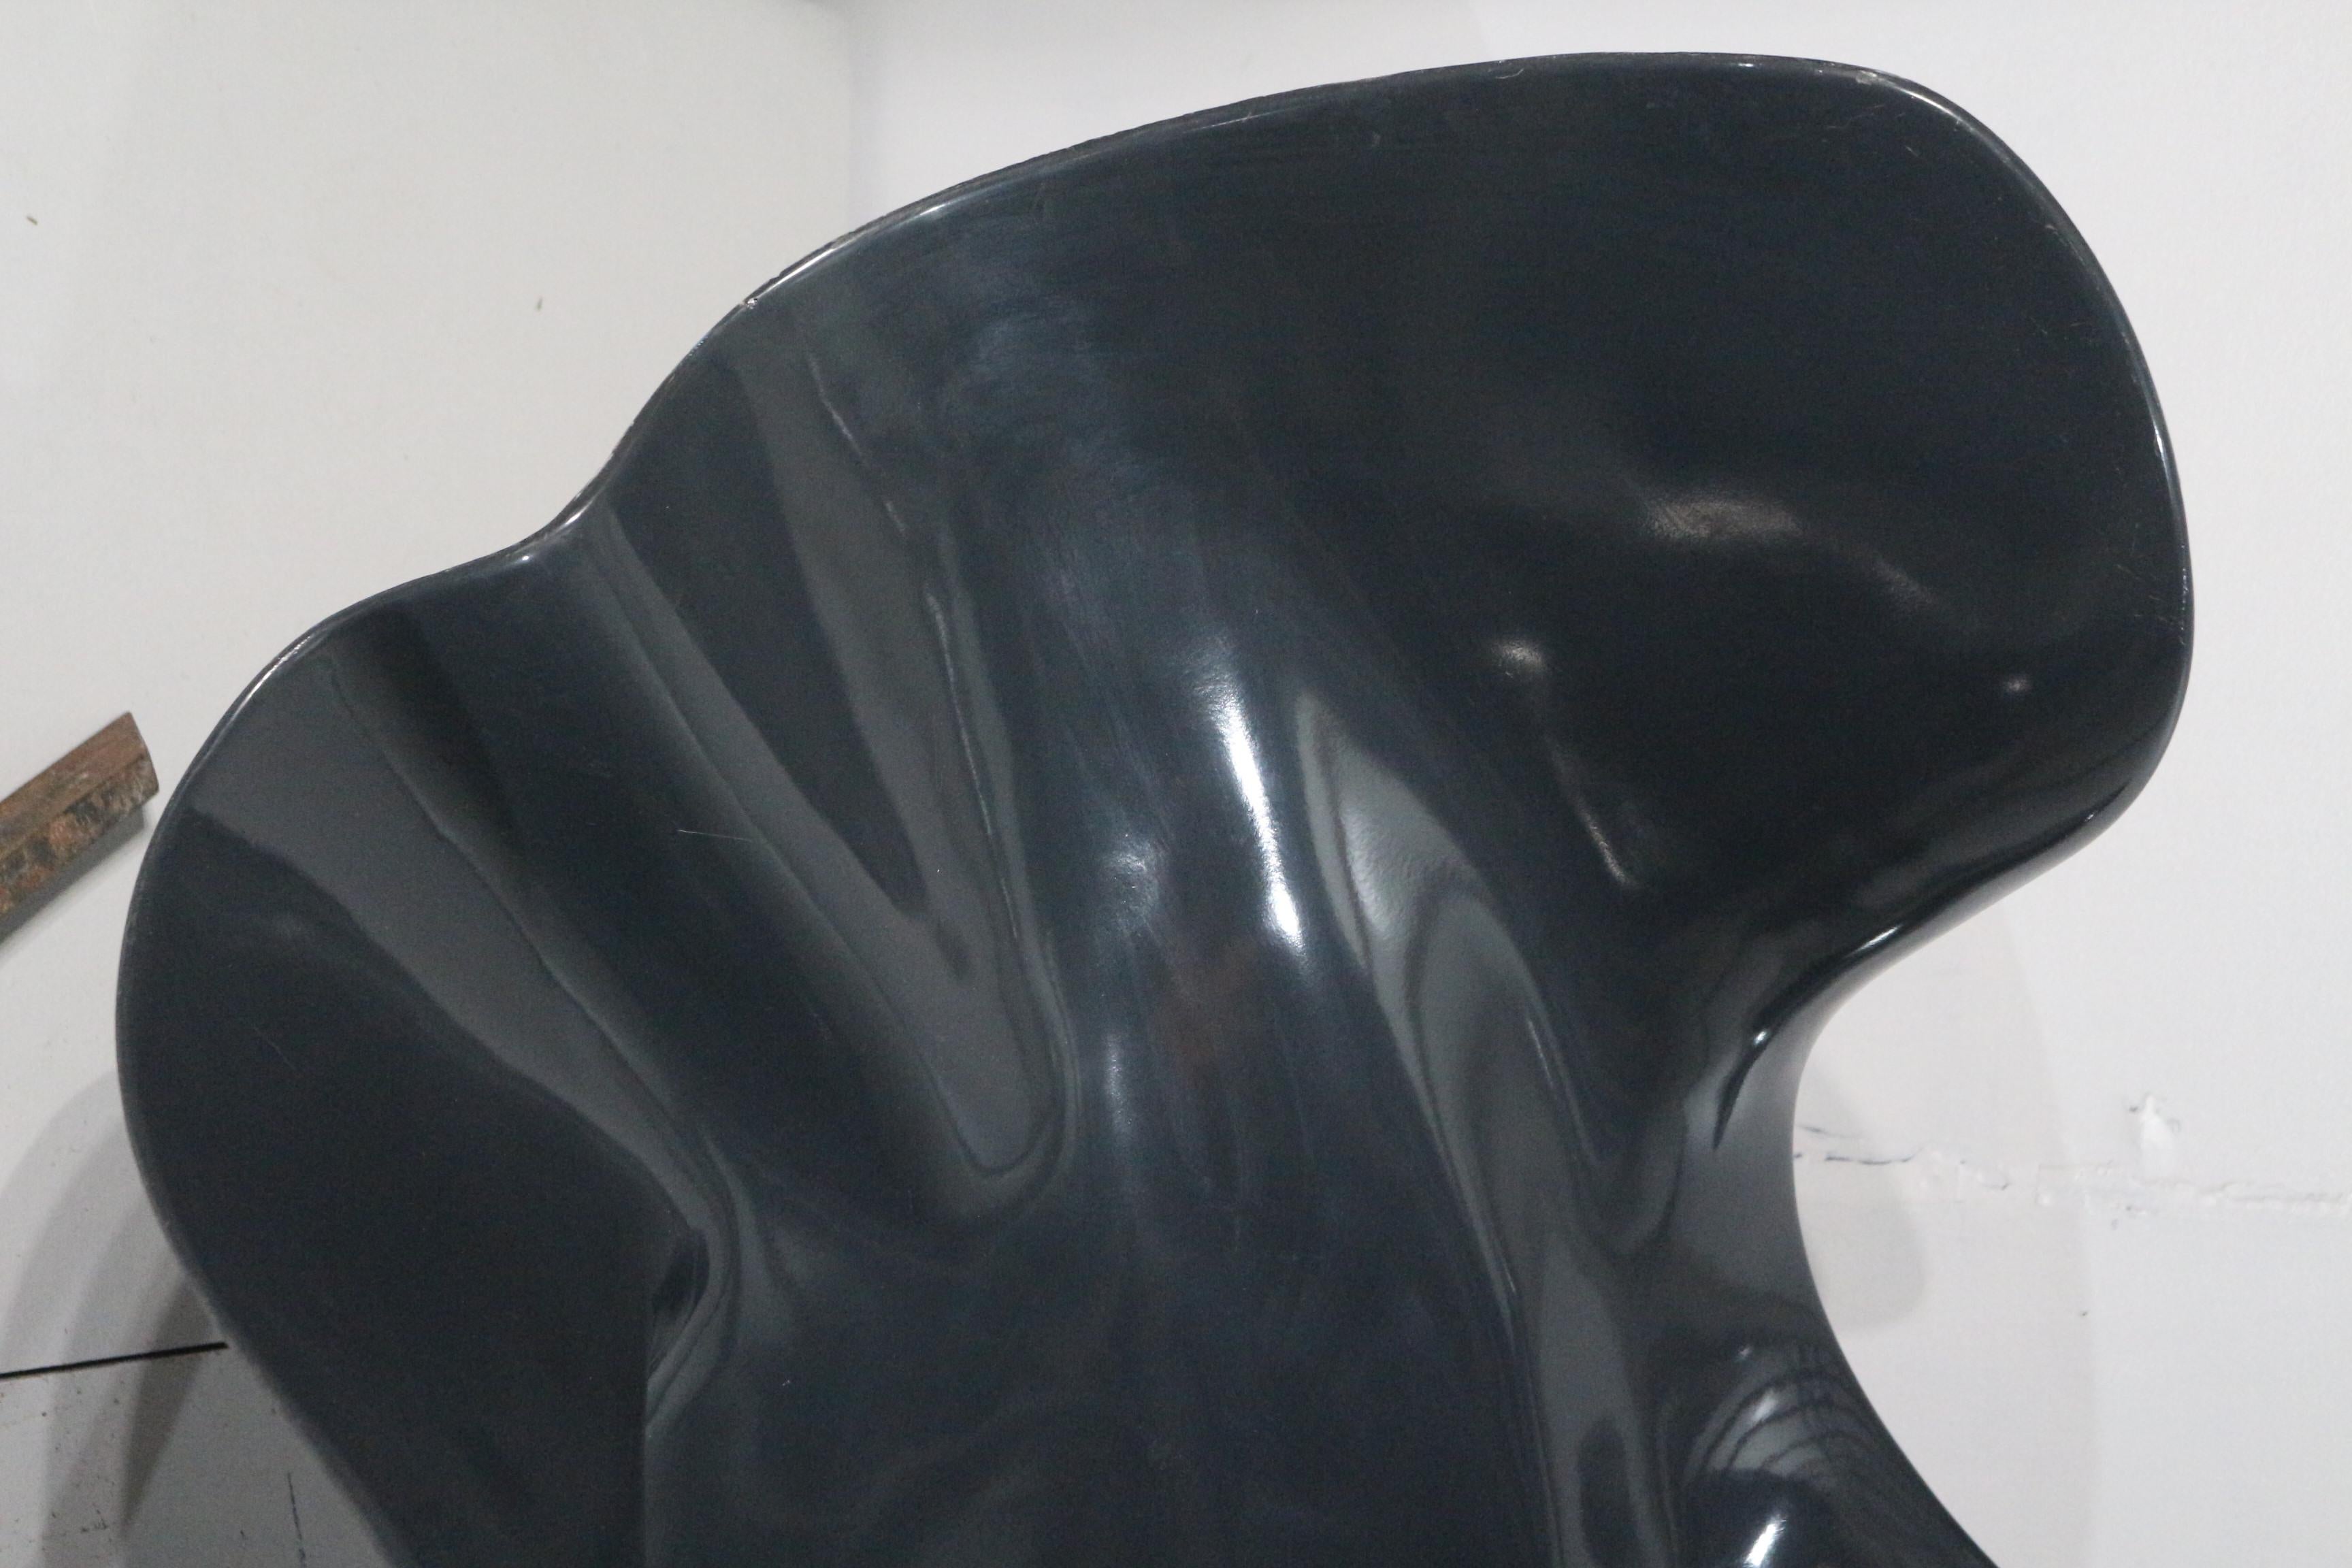 Bernard Rancillac Design 1966 Fauteuil en plastic moulé renforcé de fibre de verre de couleur gris foncé monté sur un piétement en métal laqué noir 
Non signé ni numérotée car première édition. Achetée par un collectionneur en salle des ventes .